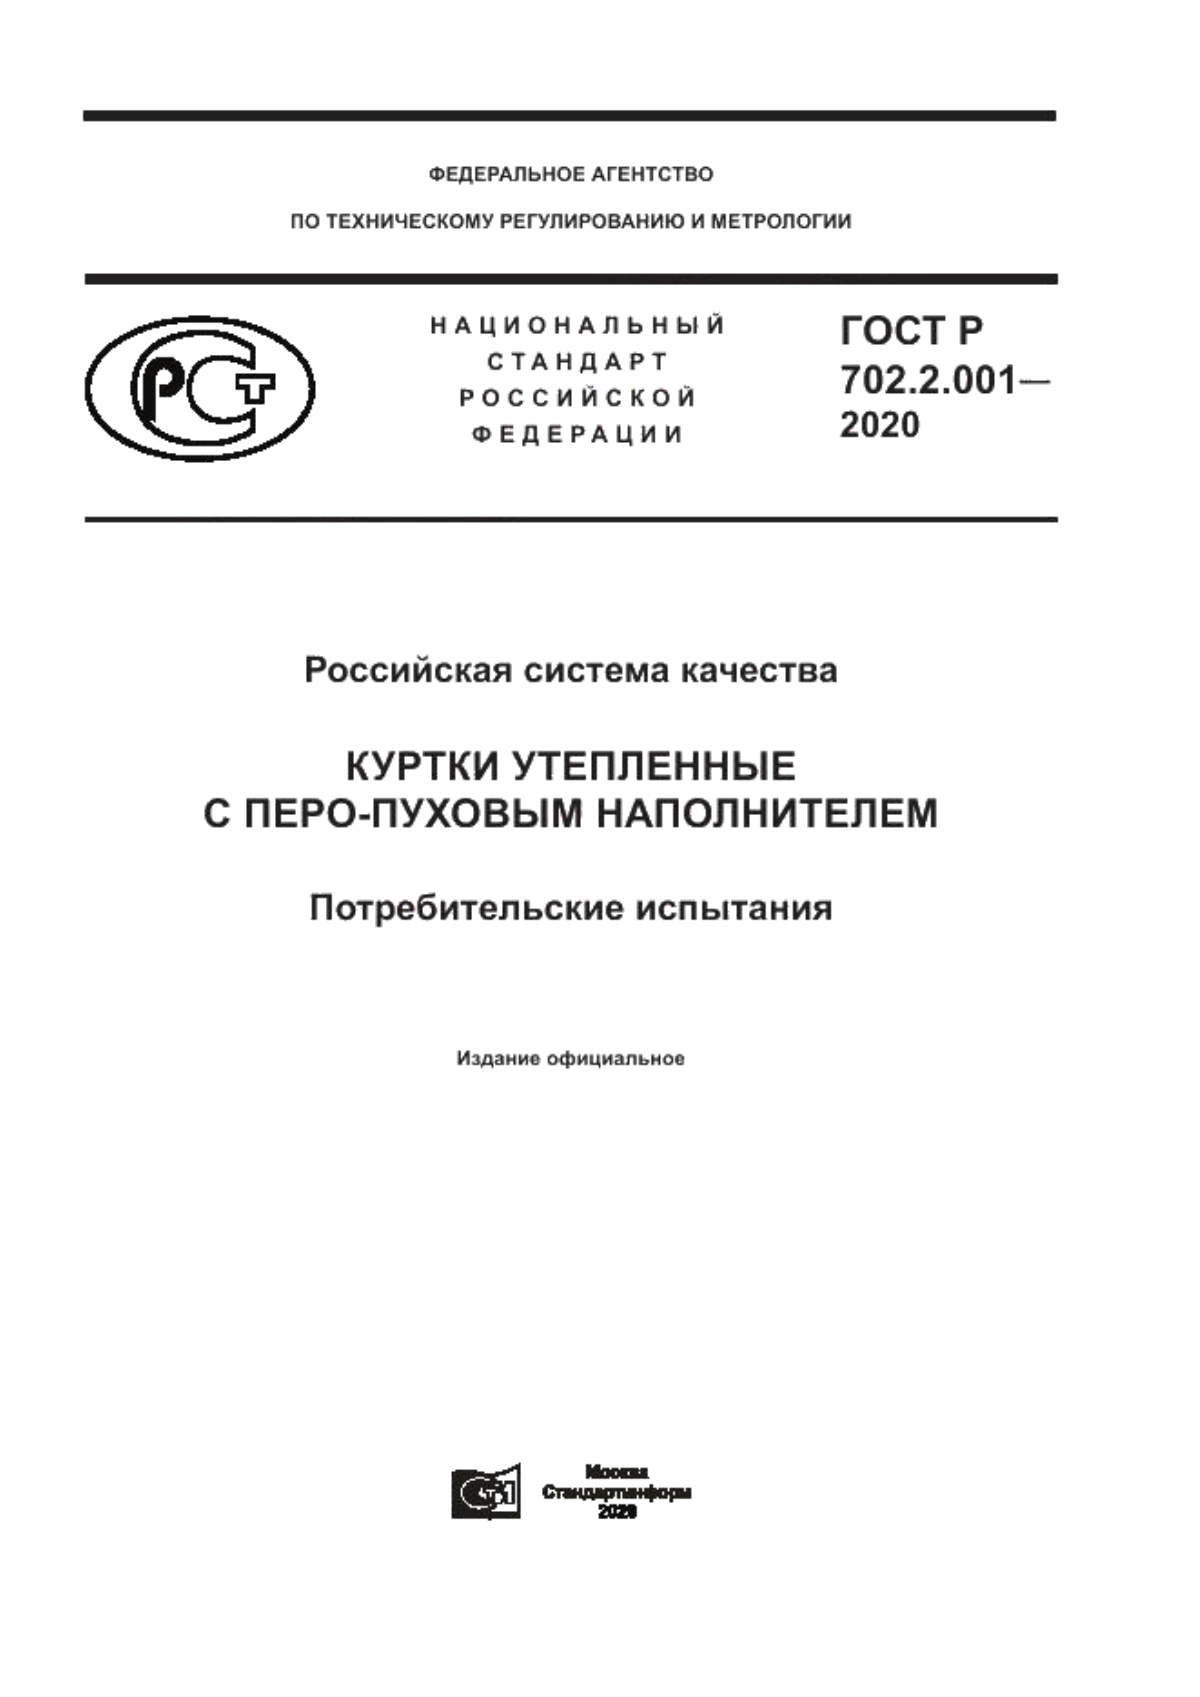 ГОСТ Р 702.2.001-2020 Российская система качества. Куртки утепленные с перо-пуховым наполнителем. Потребительские испытания